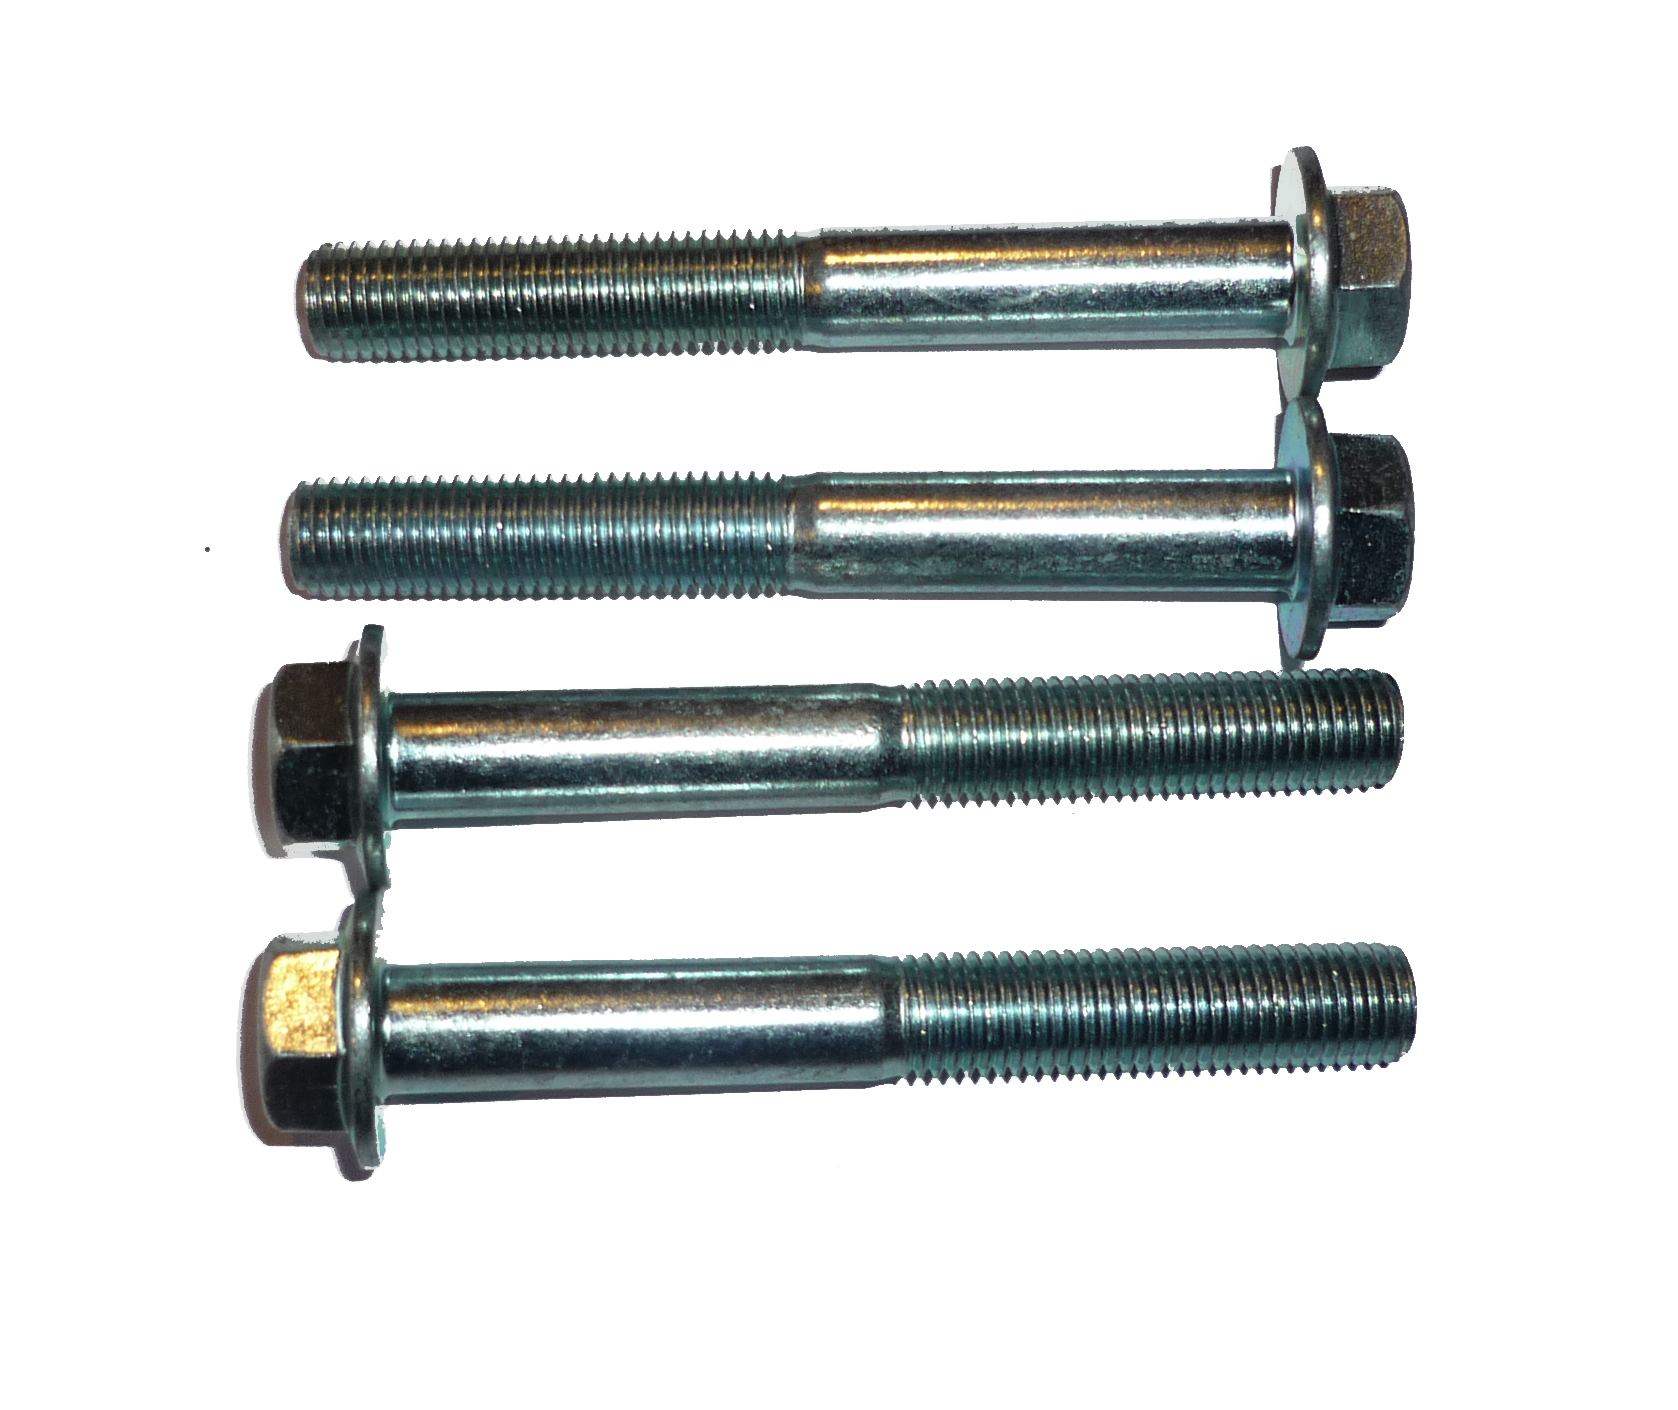 tornillos para cabeza cilindro (gx160 y gx390 misma foto)